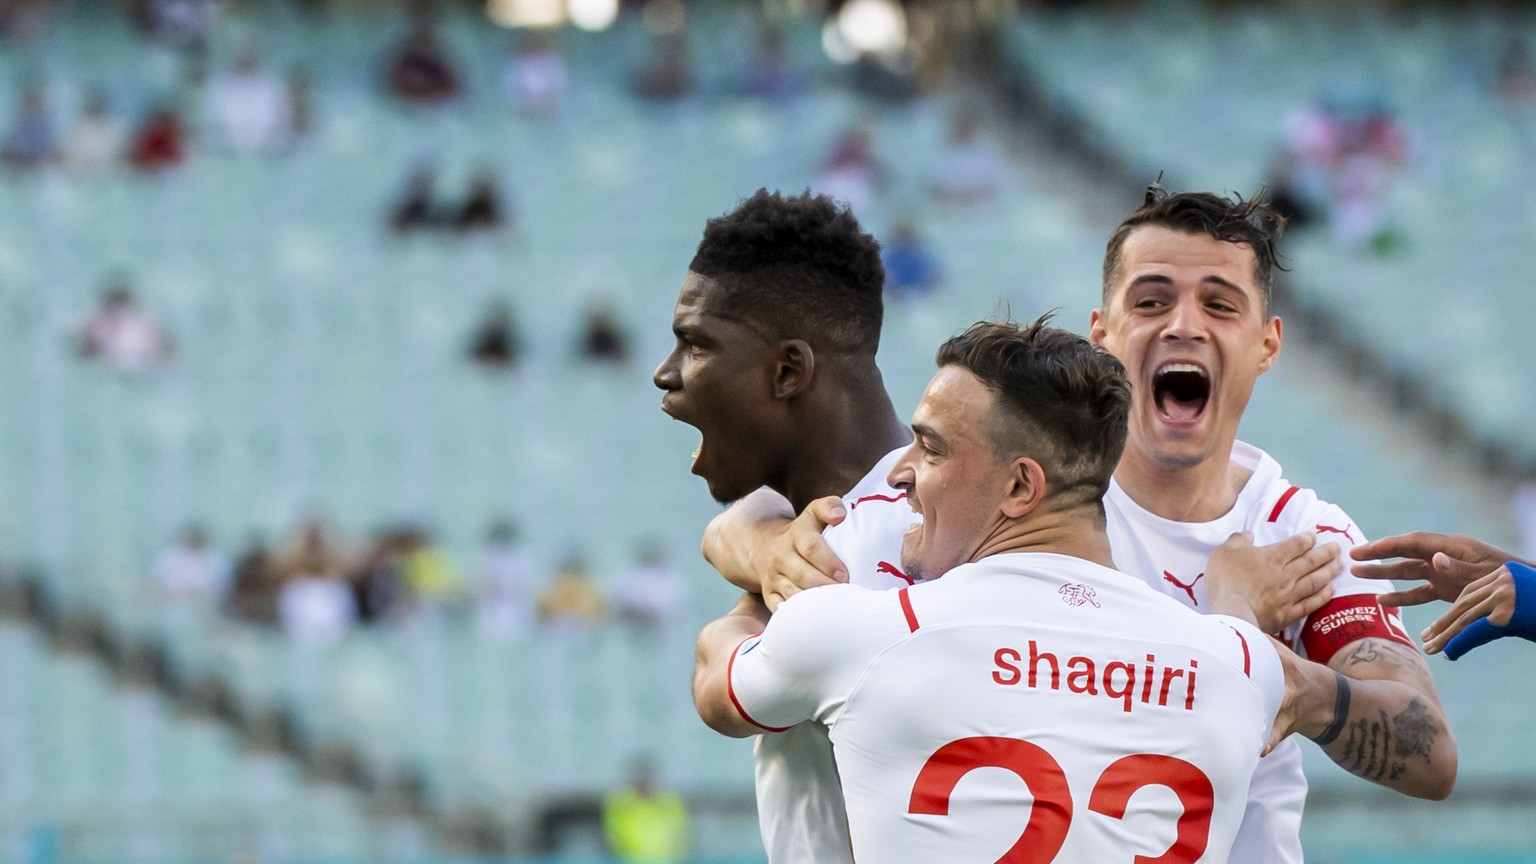 Der schönste Moment des Spiels: Xhaka feiert mit Torschütze Embolo und Shaqiri den Schweizer Treffer beim 1:1 gegen Wales.